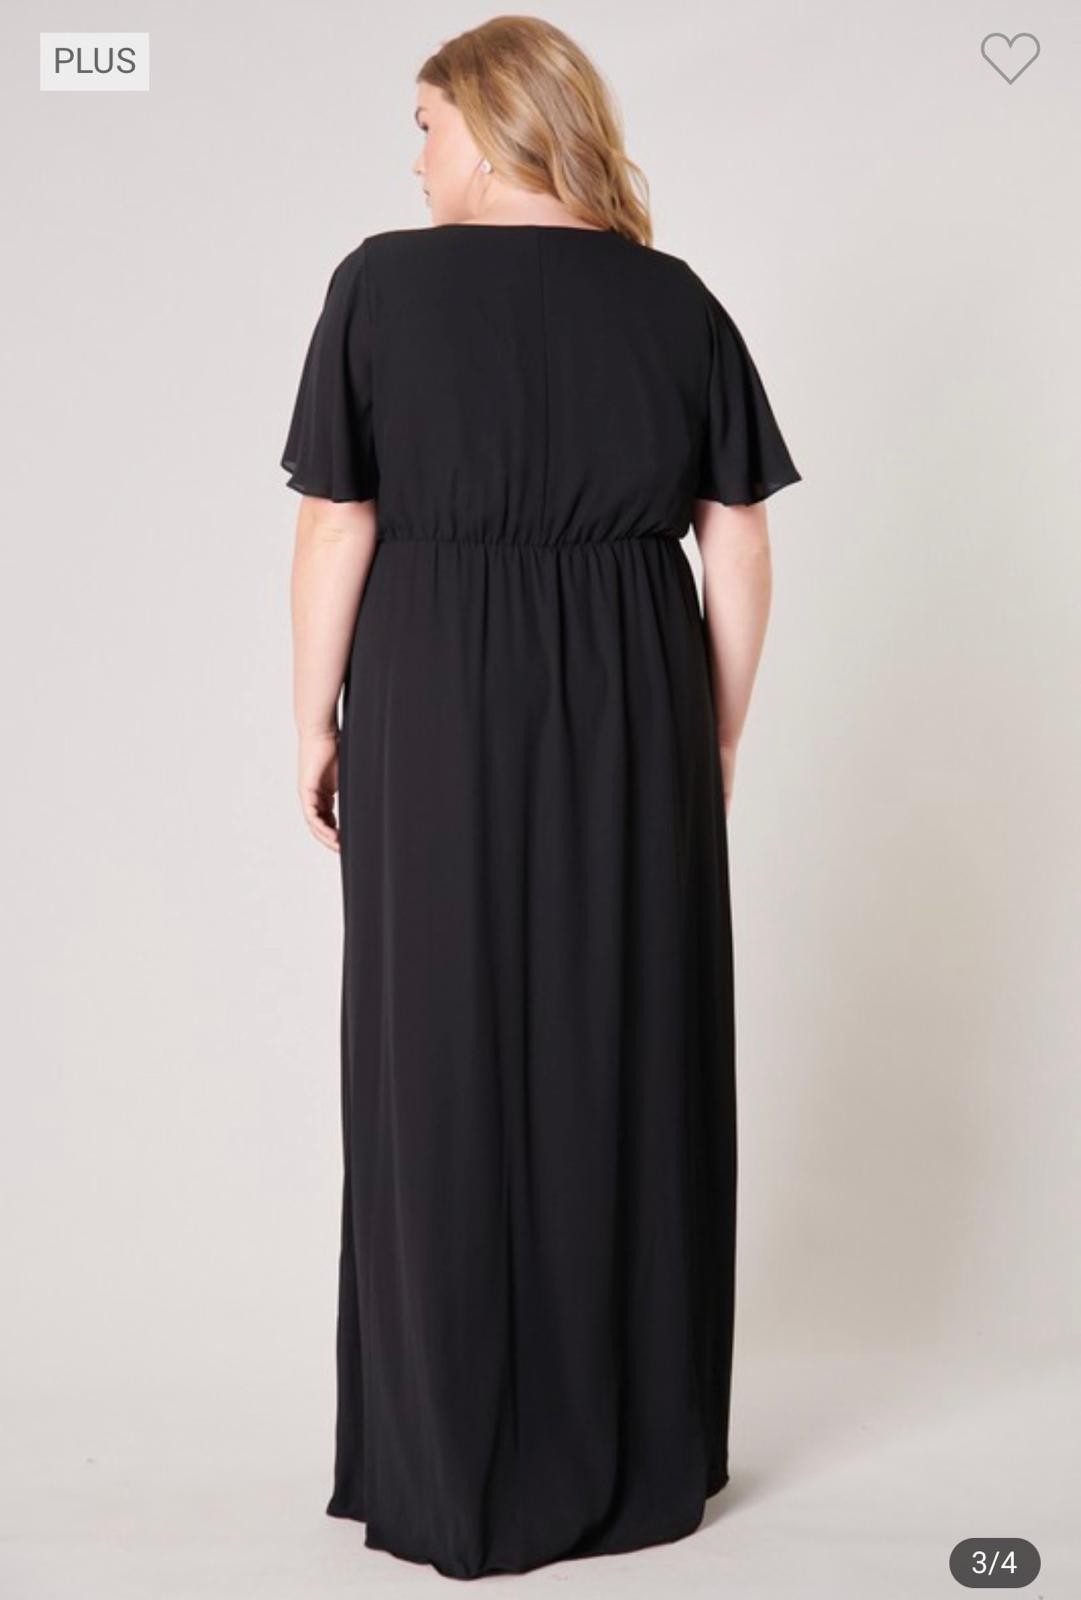 Aella - Black Maxi Dress